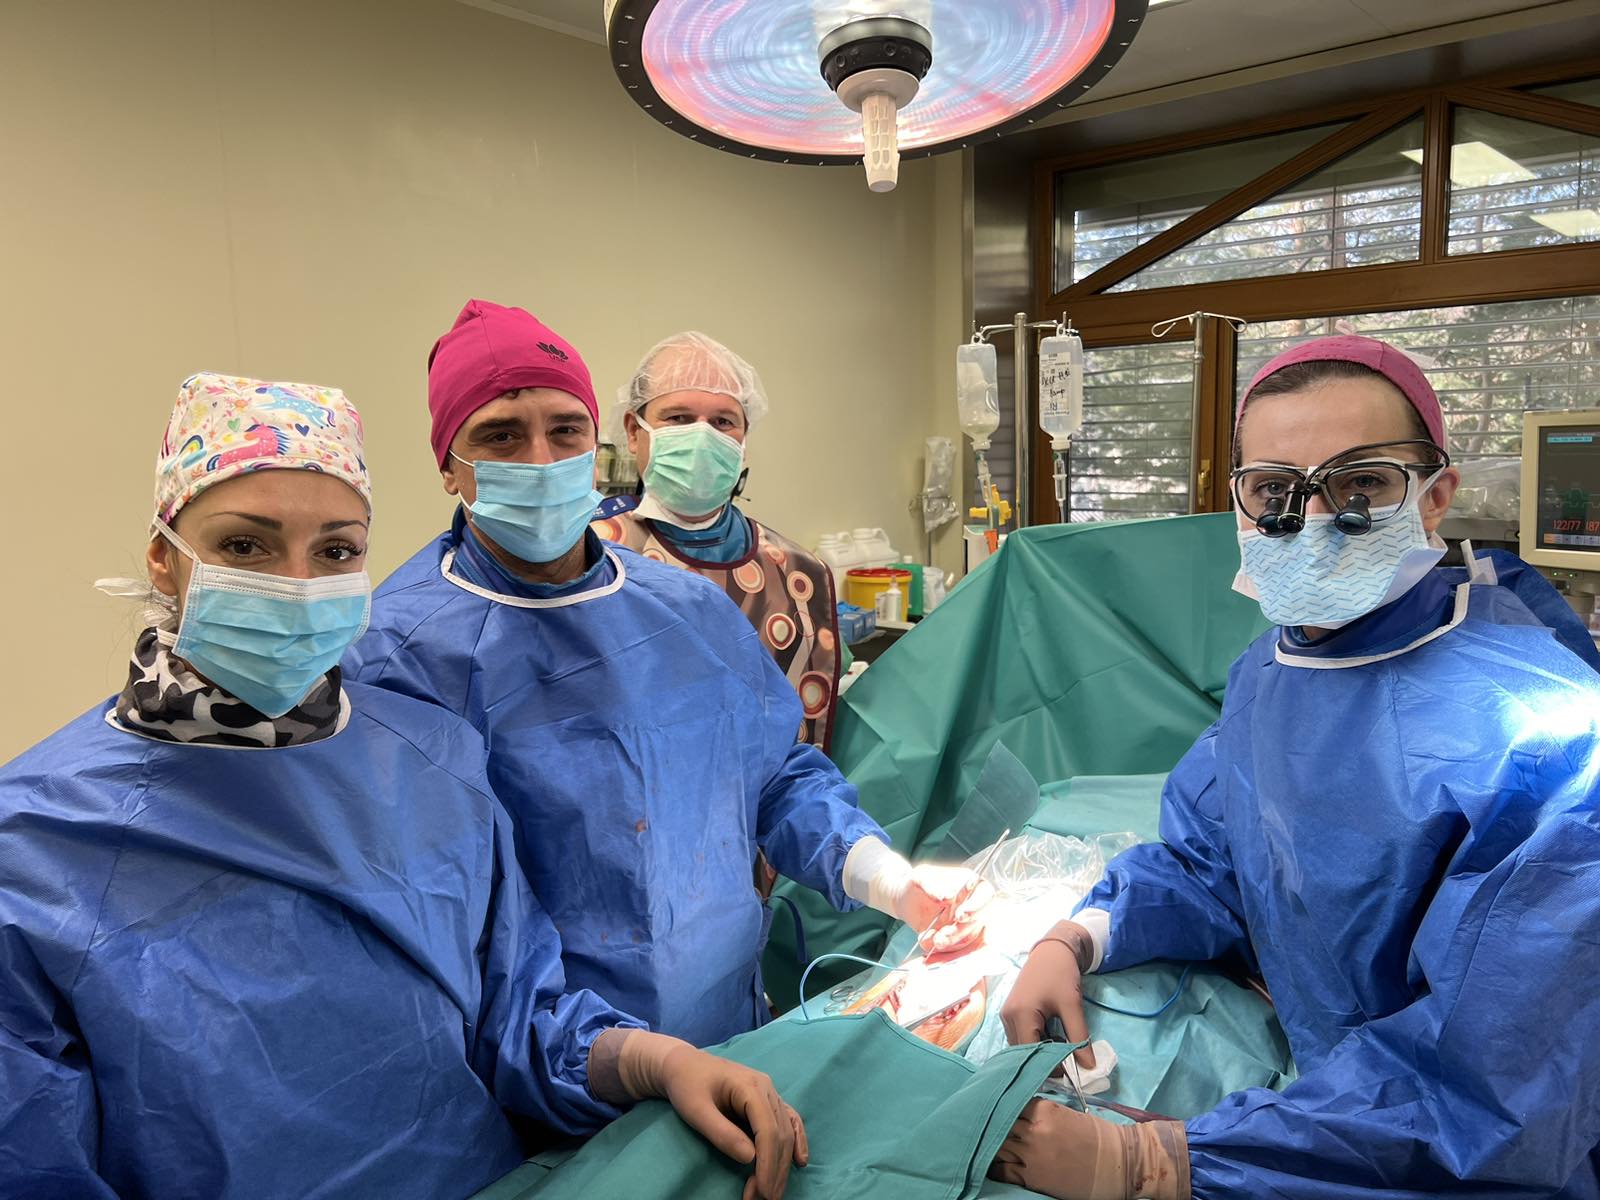 Съдови хирурзи, ръководени от д-р Асен Тодоров, спасиха живота на 81-годишна жена след 10-часова сложна операция.